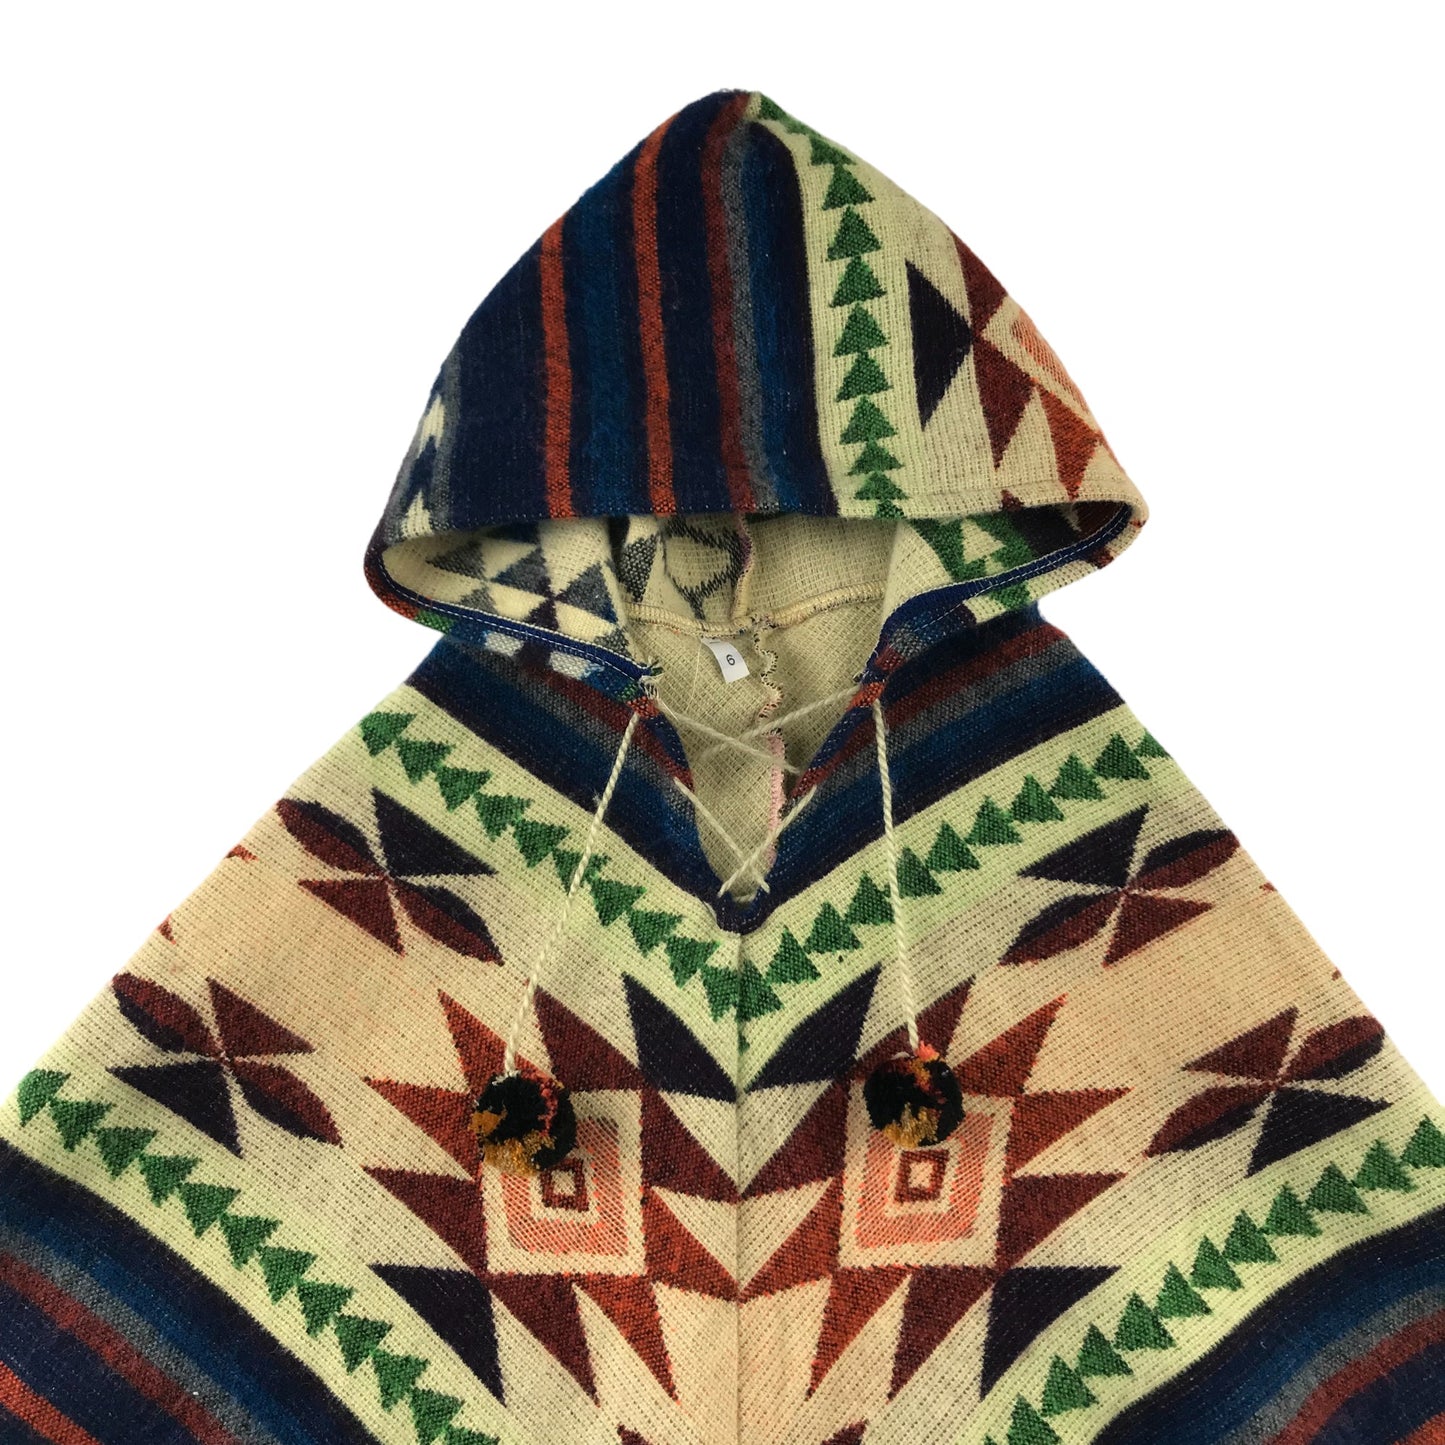 Poncho Age 6-7 Multicolour Hooded with Fringe Hem